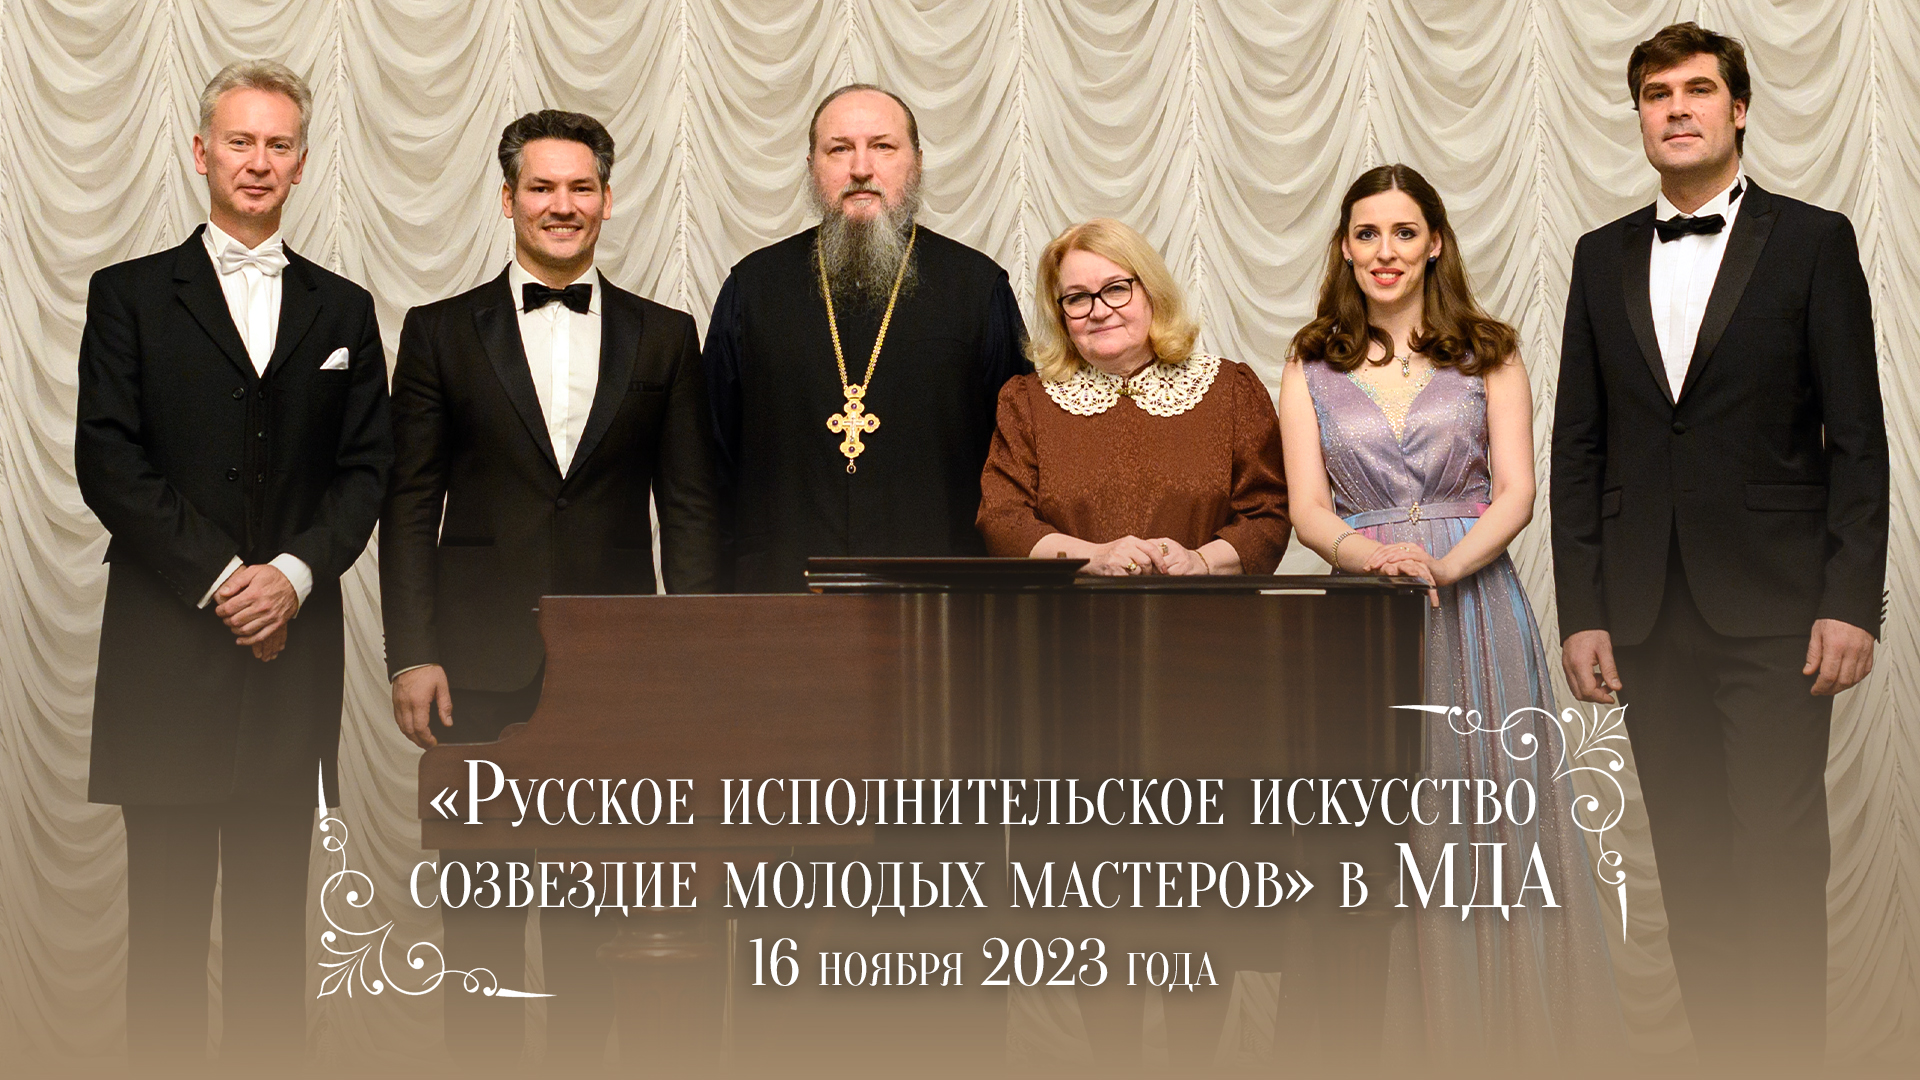 «Русское исполнительское искусство: созвездие молодых мастеров» в МДА (2023)